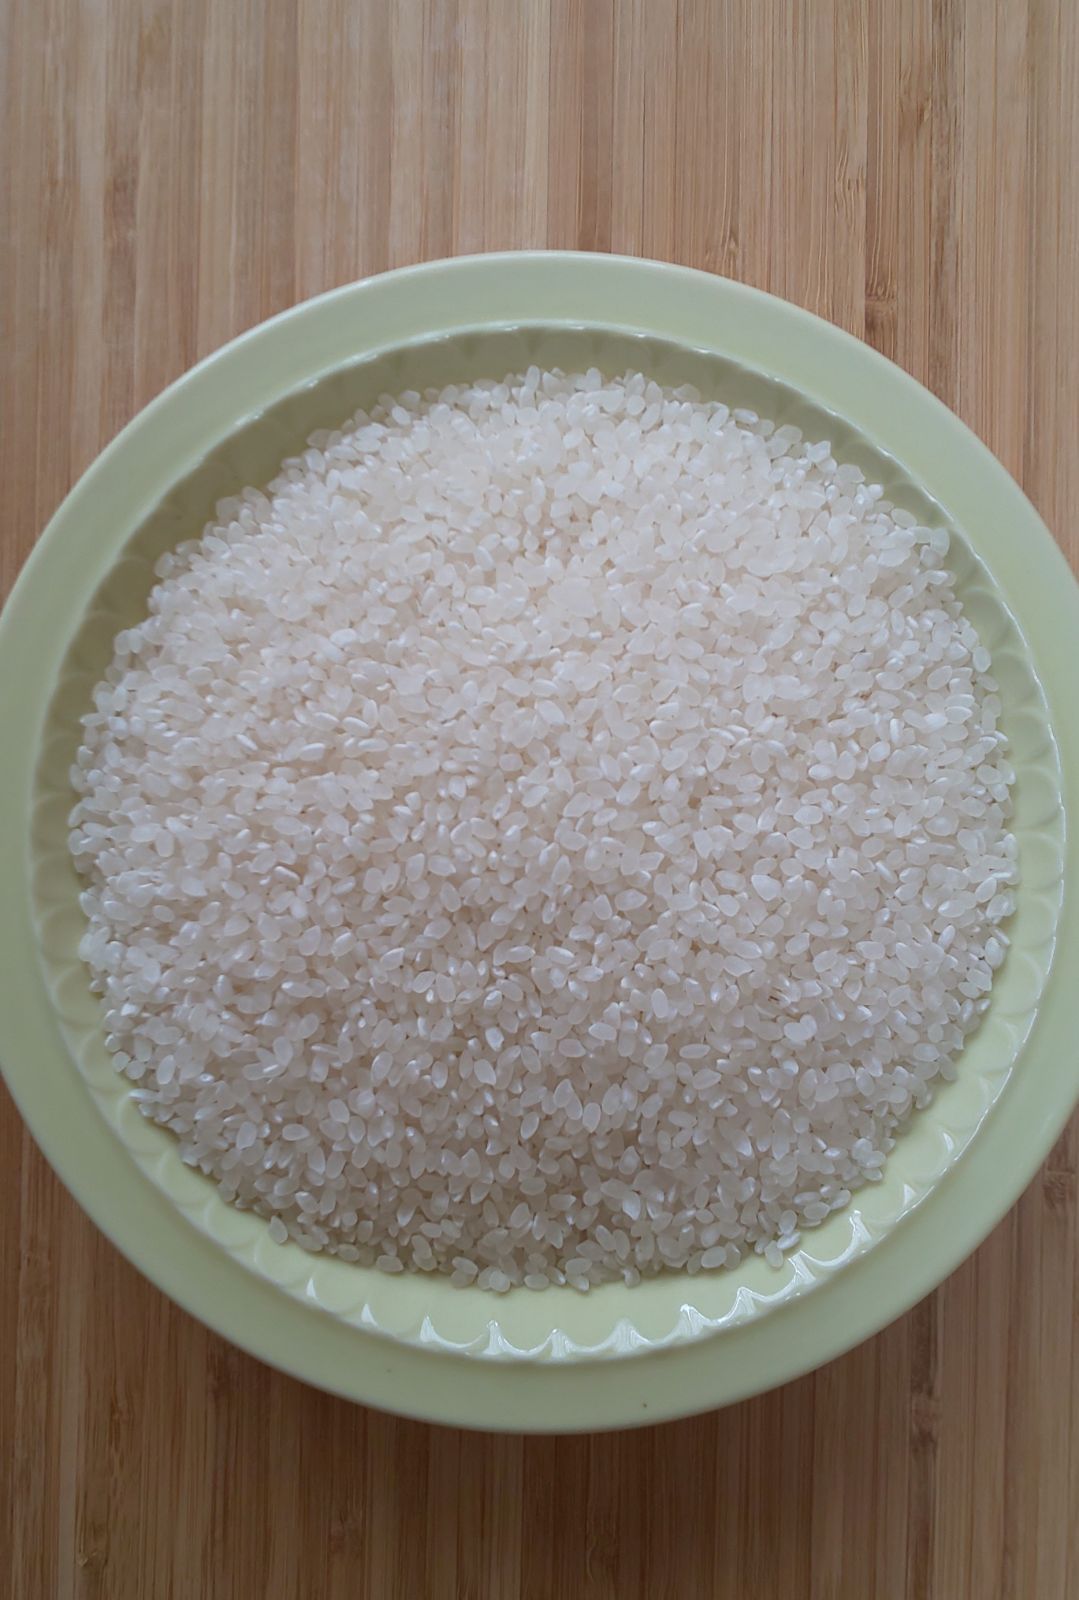 メルカリShops - 令和4年産三重県伊賀市産コシヒカリ20㎏ 10㎏×2無洗米(送料精米料消費税込)